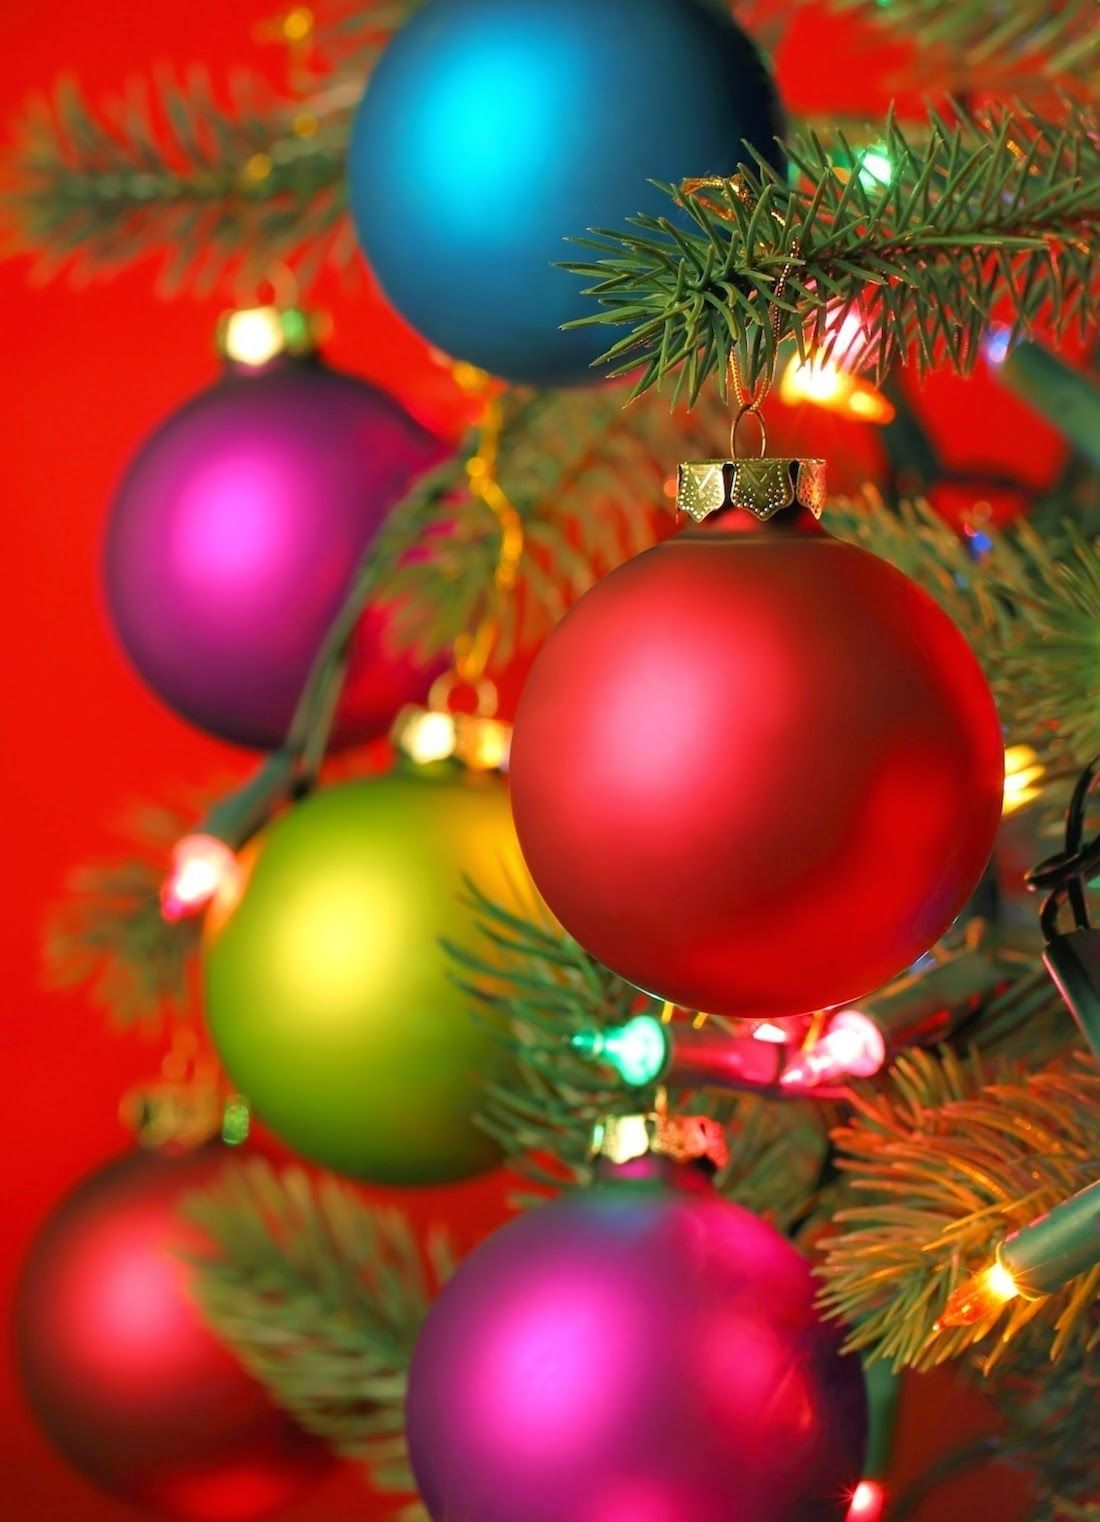 Colorful Christmas Ornaments on Tree. Christmas decorations, Christmas wallpaper, Christmas ornaments